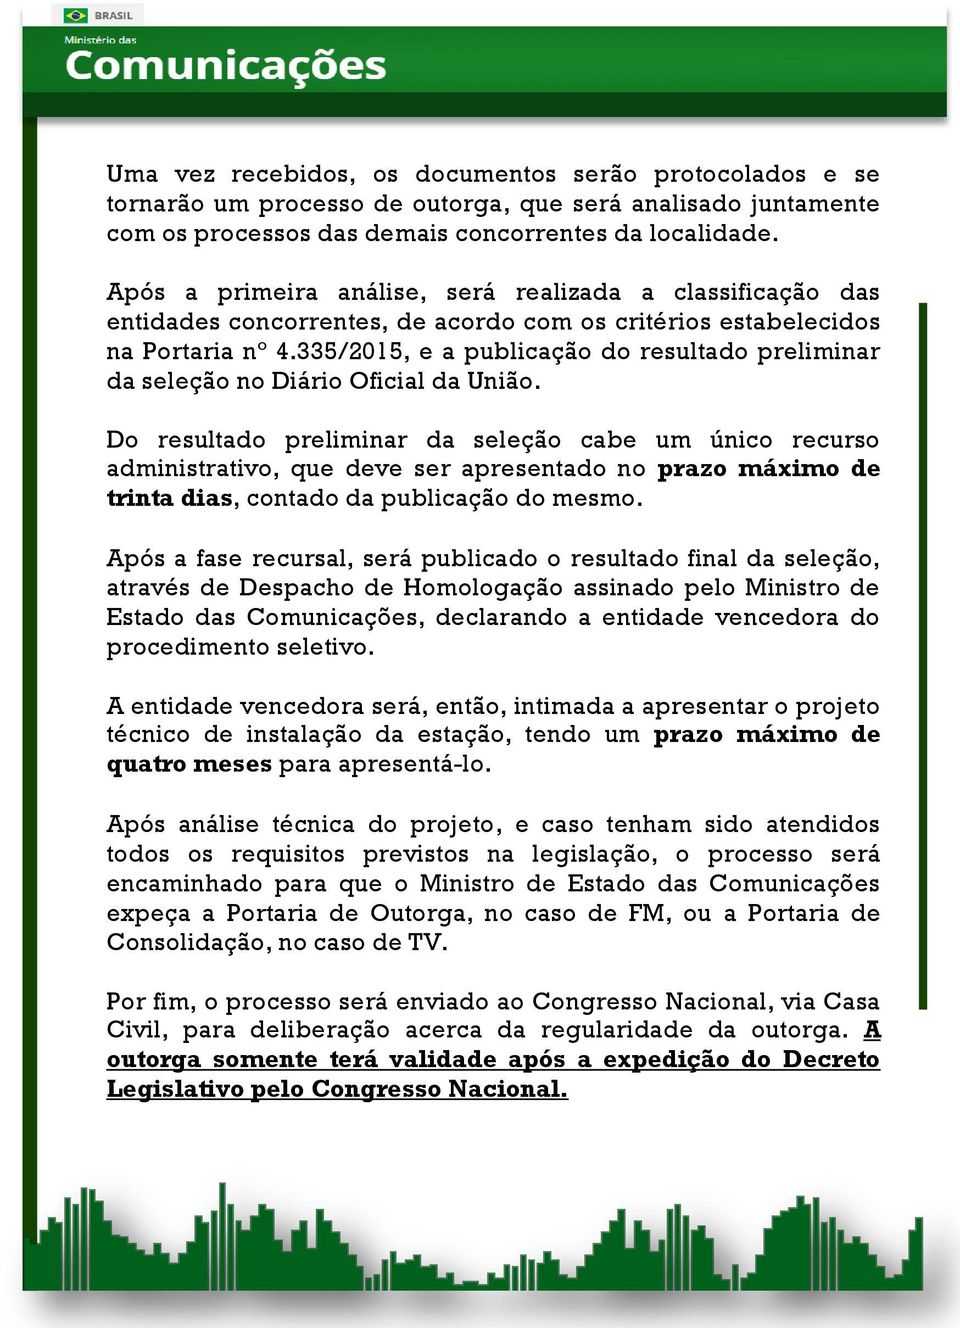 335/2015, e a publicação do resultado preliminar da seleção no Diário Oficial da União.